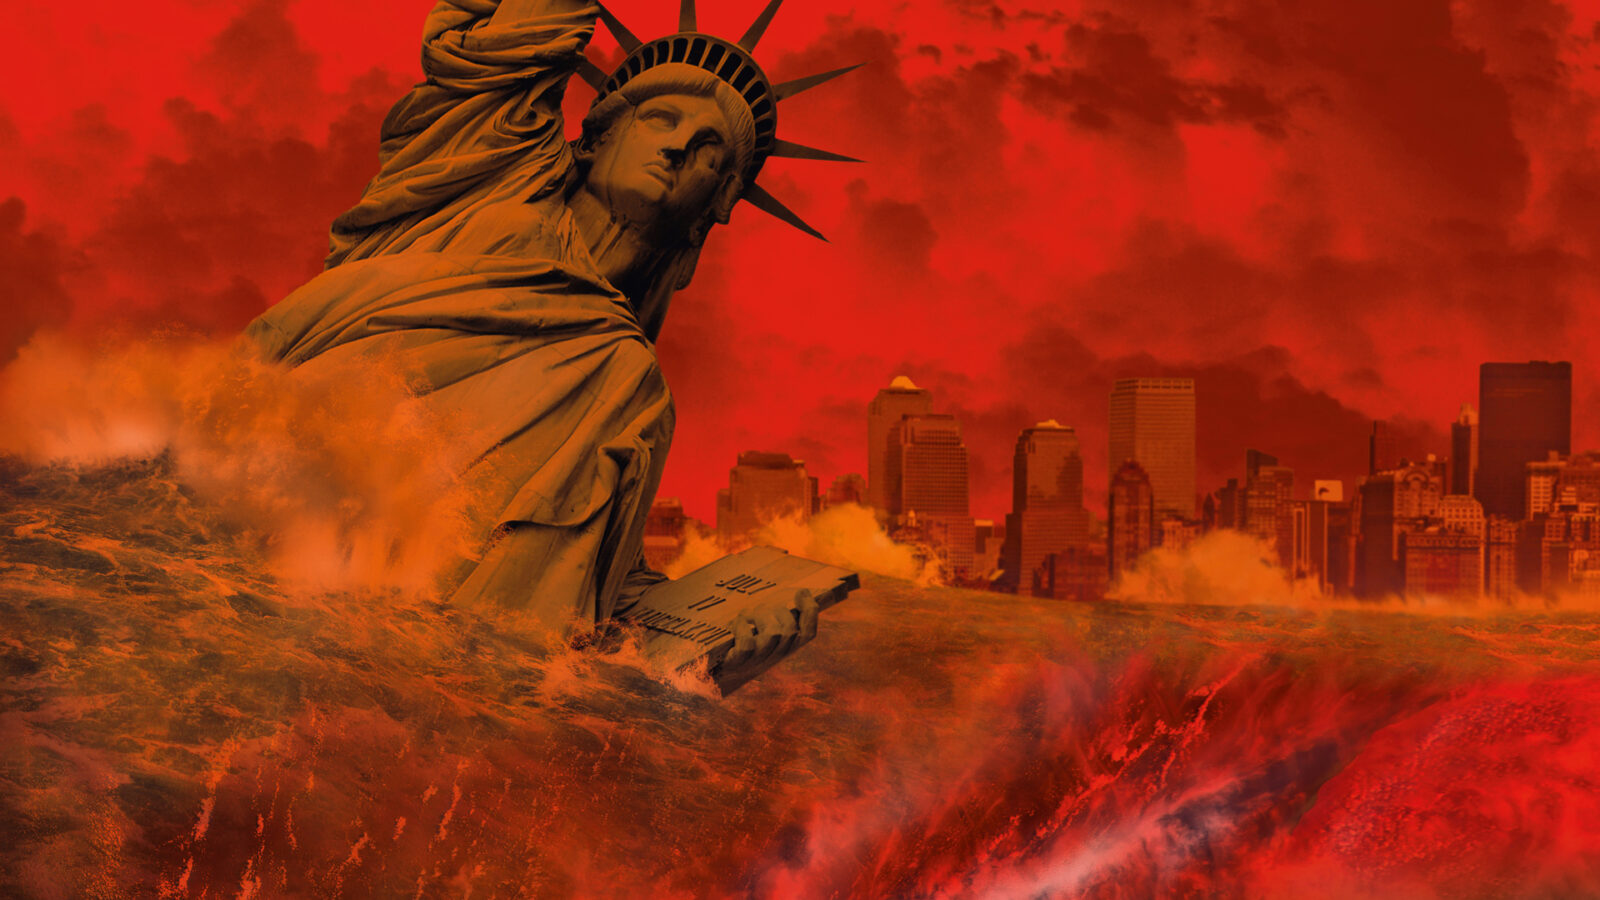 Das Titelbild zeigt die Freiheitsstatur, einige Häuser New Yorks und eine Landschaft in Rottönen.